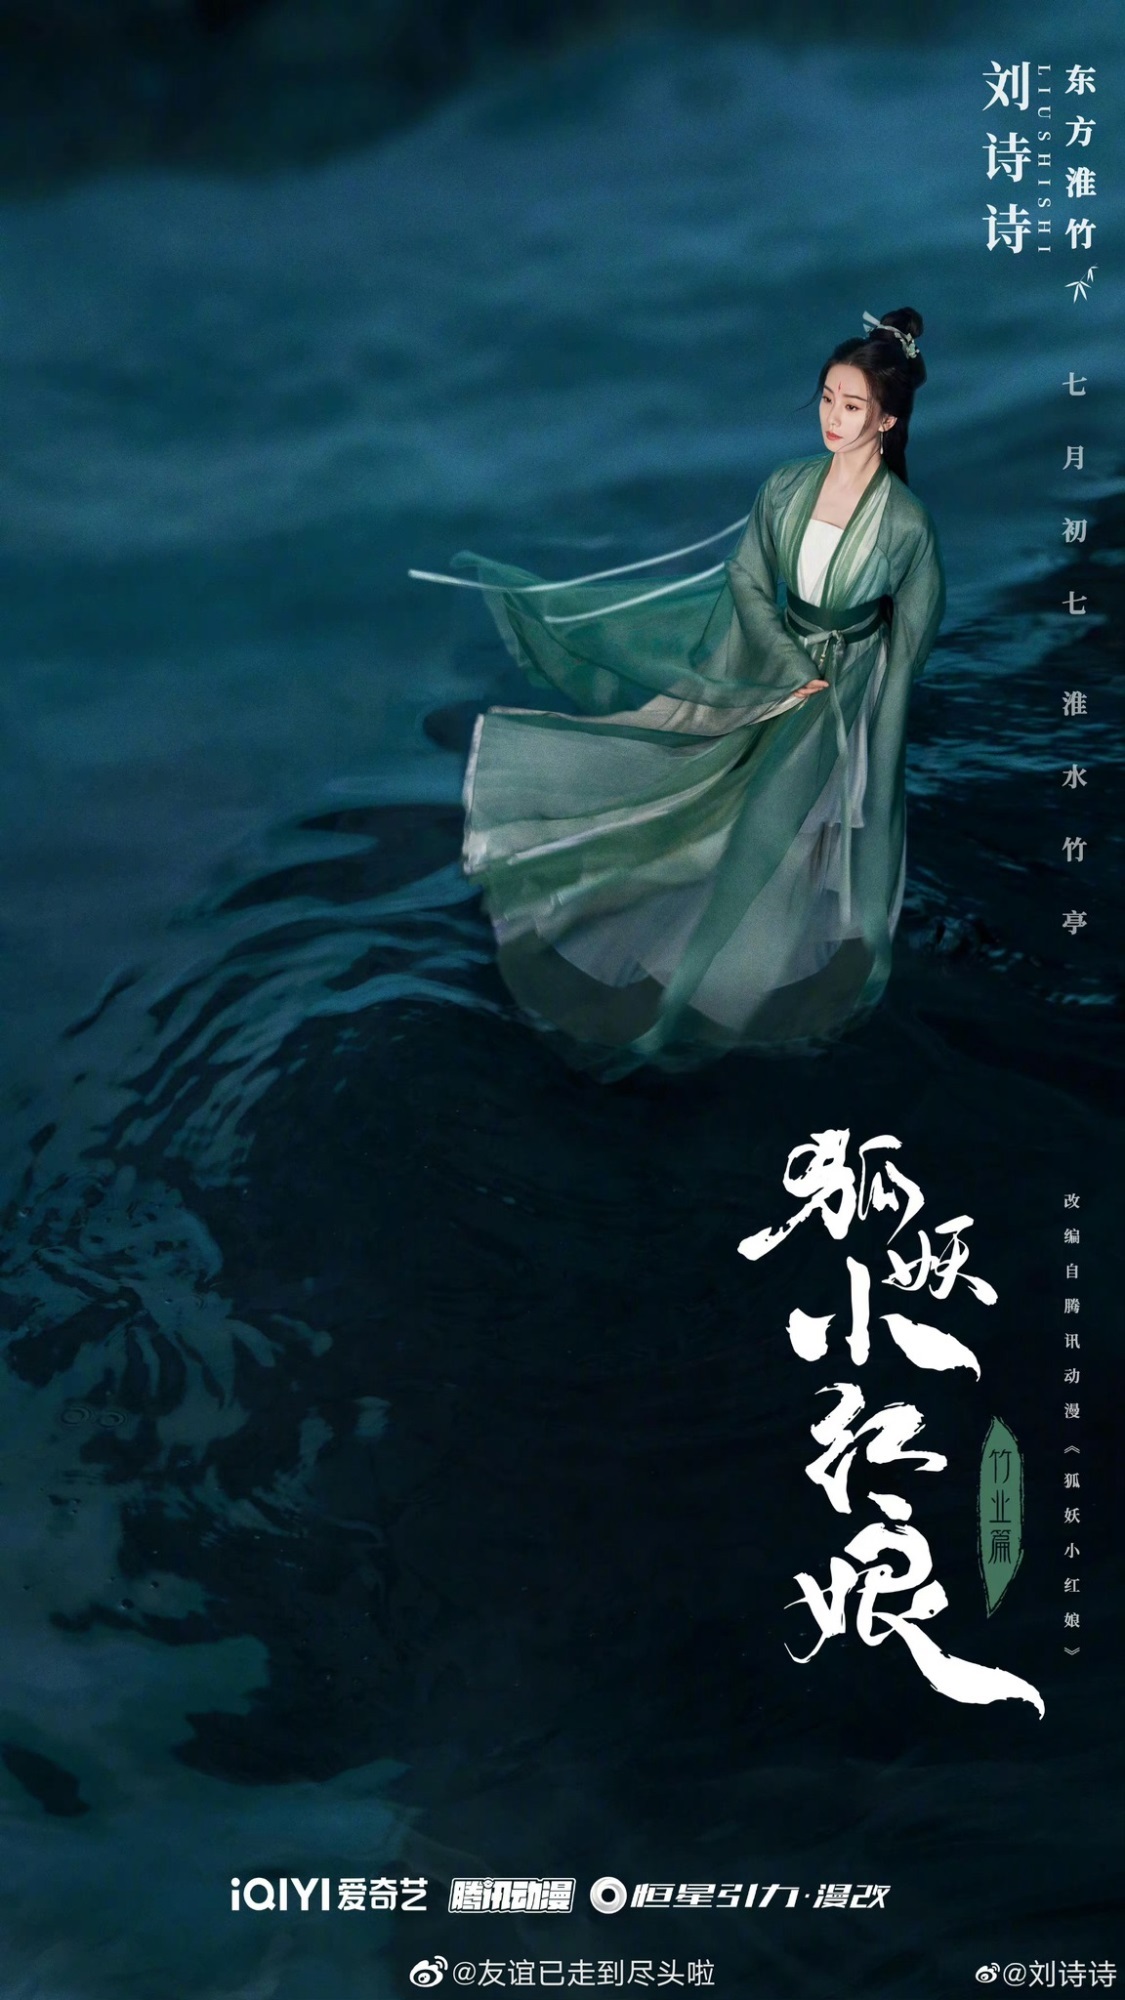 Dương Mịch sẽ vào vai khách mời cho Hồ Yêu Tiểu Hồng Nương phần Trúc Nghiệp của Lưu Thi Thi - Ảnh 2